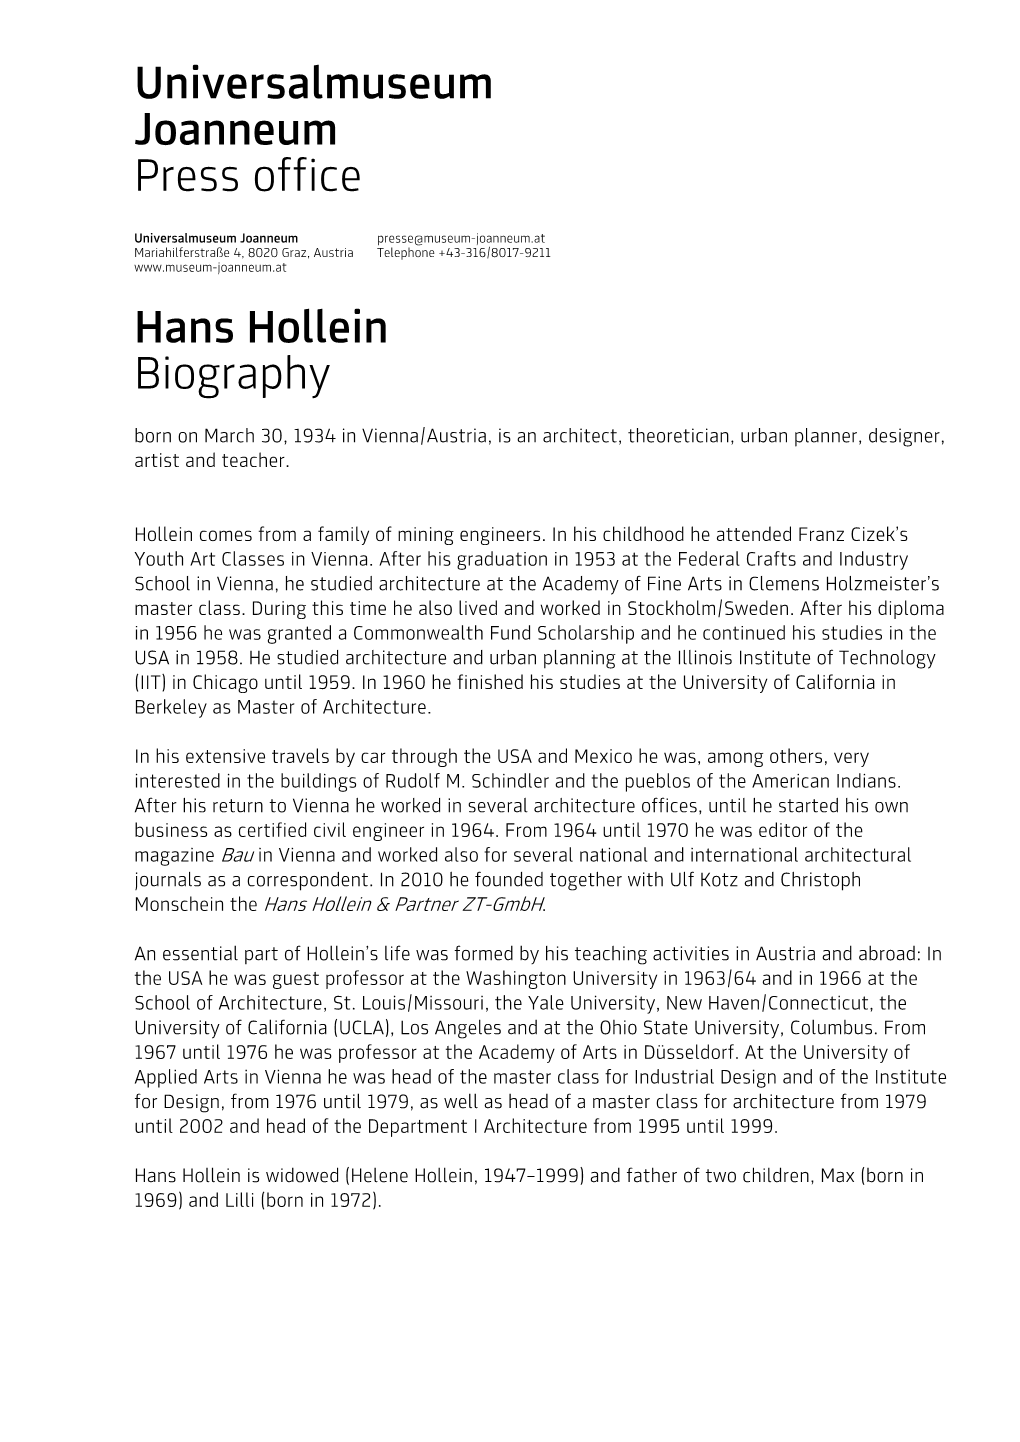 Universalmuseum Joanneum Press Office Hans Hollein Biography